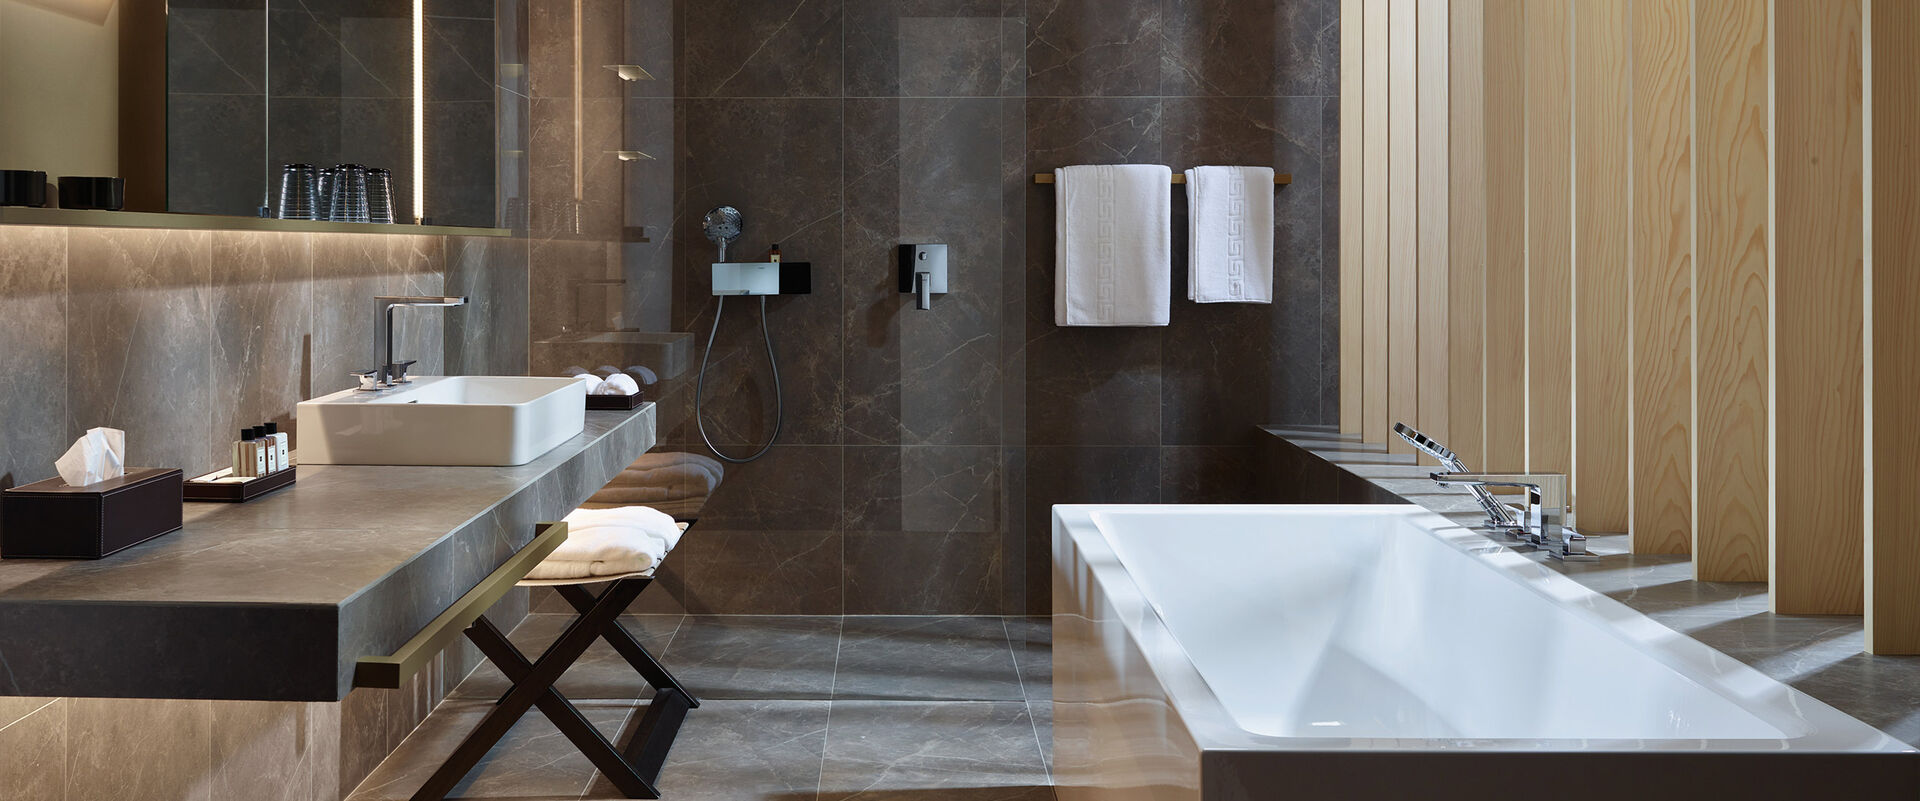 Modernes Badezimmer mit großer Badewanne, Waschbecken mit beleuchtetem Spiegelschrank, begehbarer Dusche und Ablagemöglichkeiten. Badarmaturen Metropol von Hansgrohe setzen Designakzente.